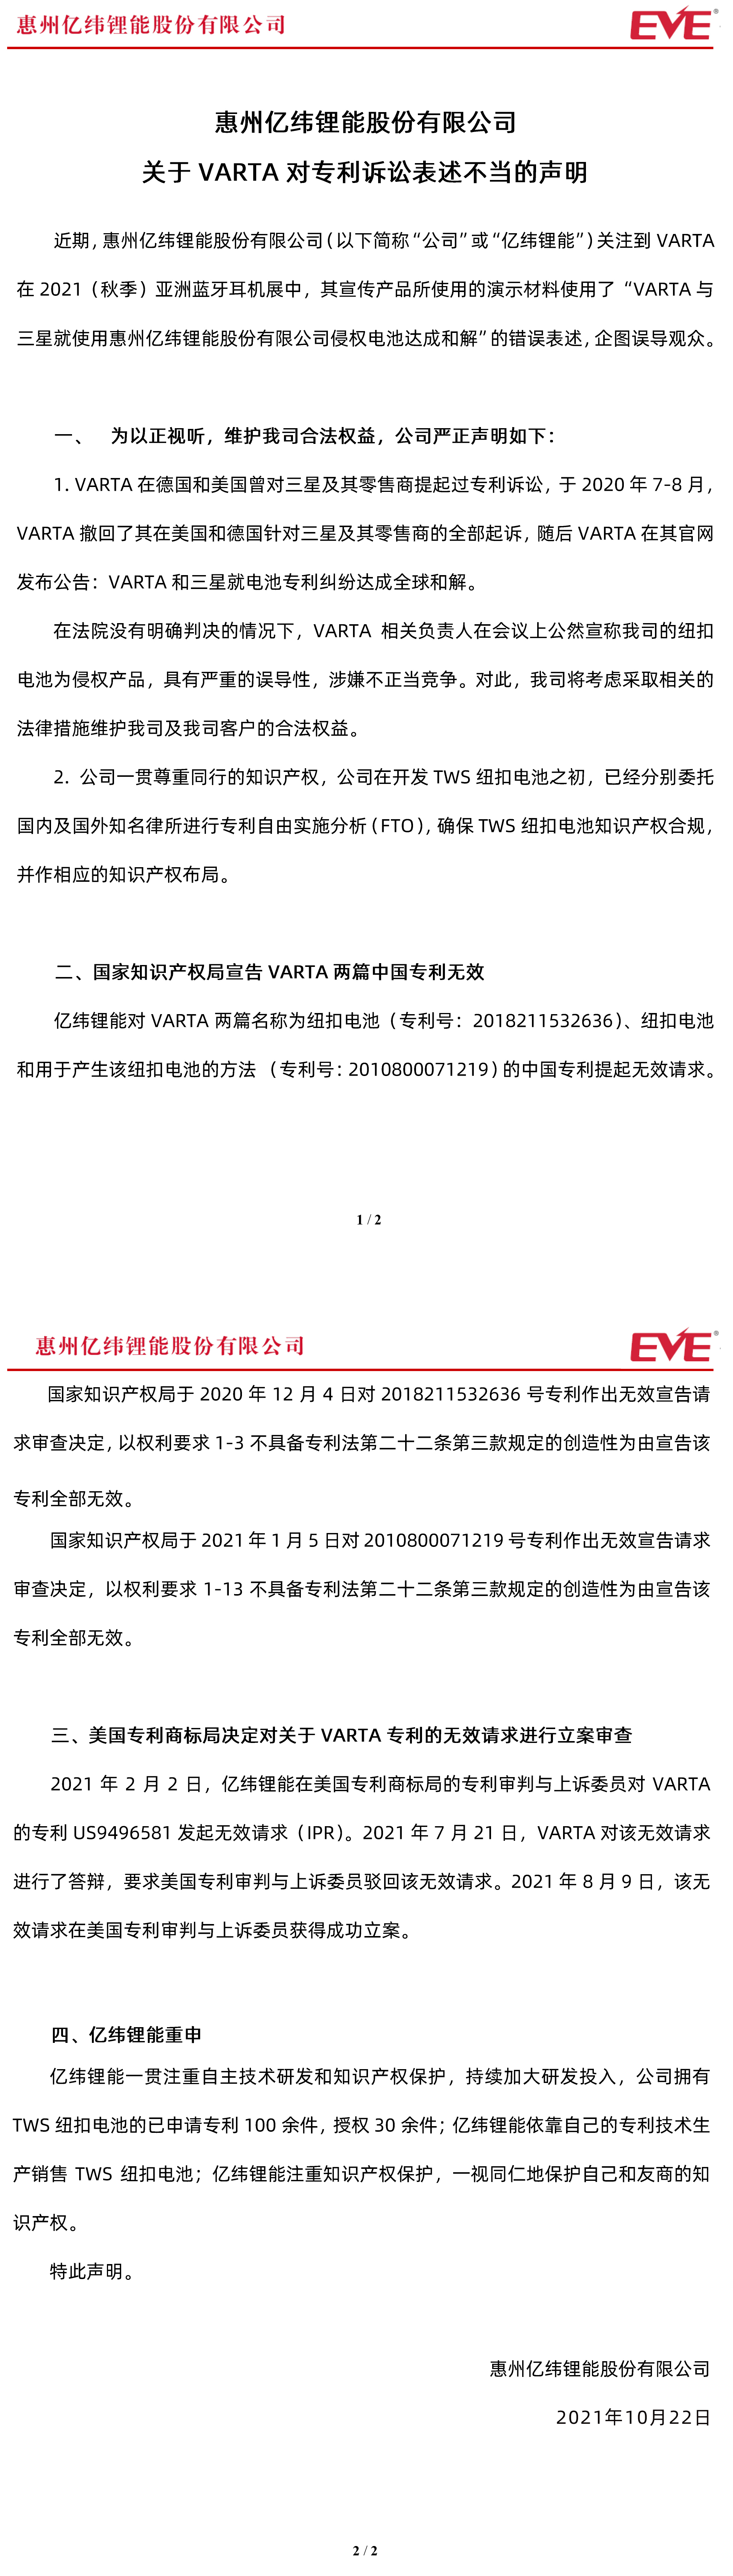 惠州亿纬锂能股份有限公司关于VARTA对专利诉讼表述不当的声明